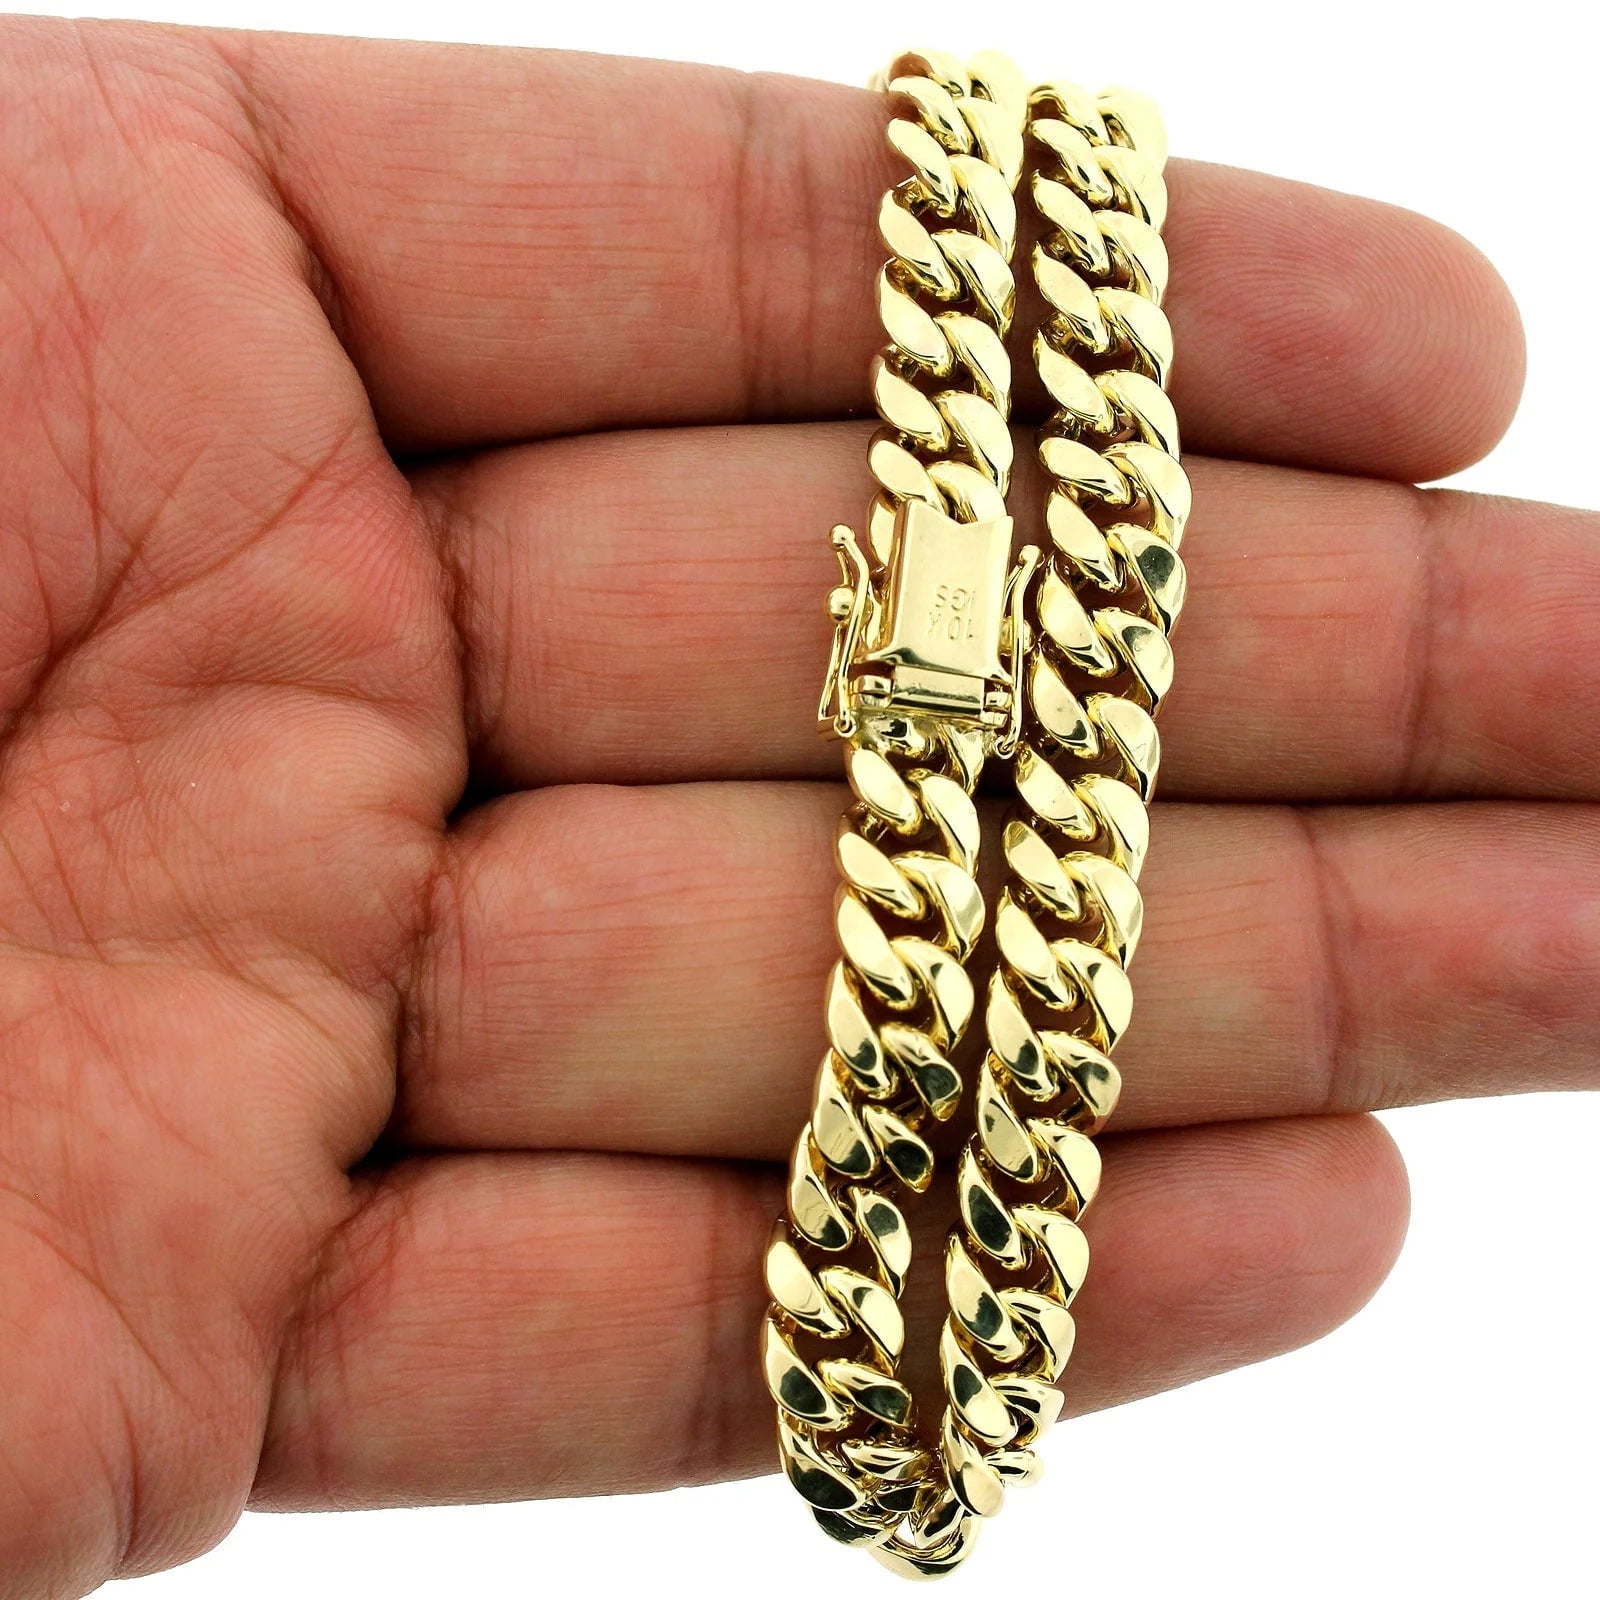 20mm Solid Cuban Link Bracelet in 10K Yellow Gold - Las Villas Jewelry |  Las Villas Jewelry